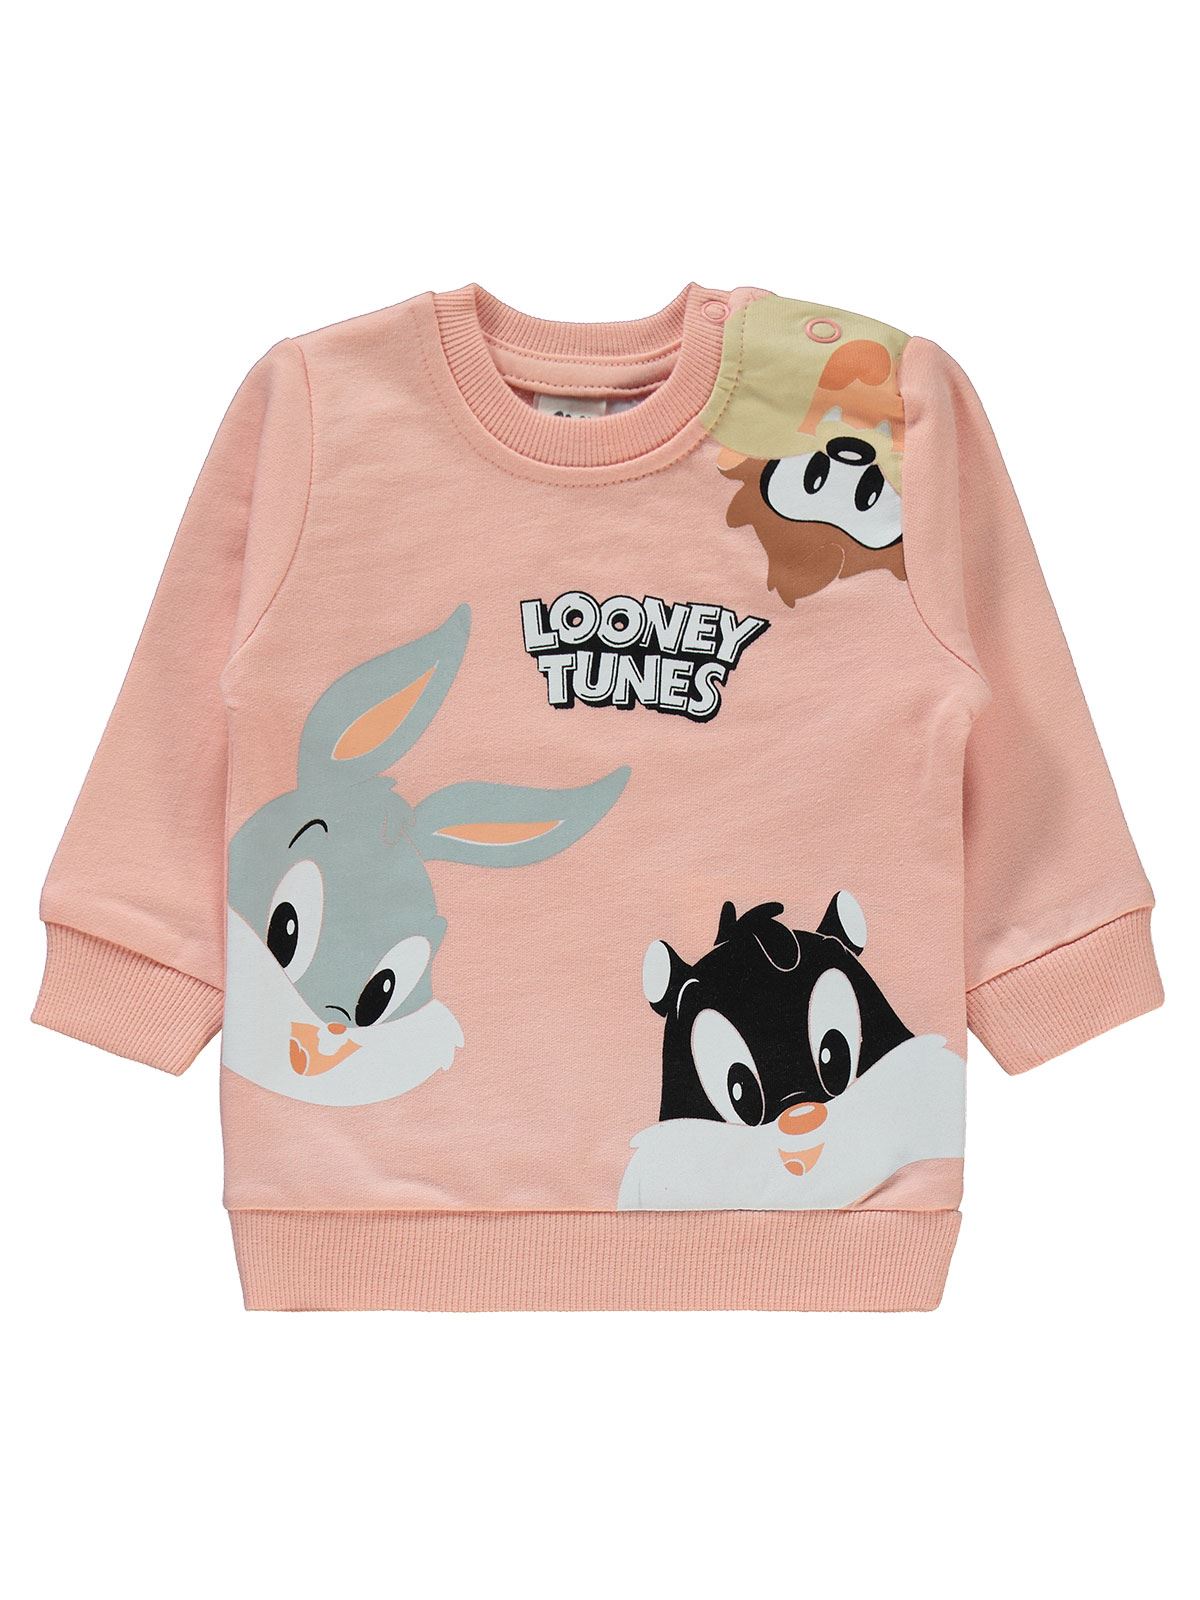 Looney Tunes Kız Bebek Takım 6-18 Ay Koyu Somon